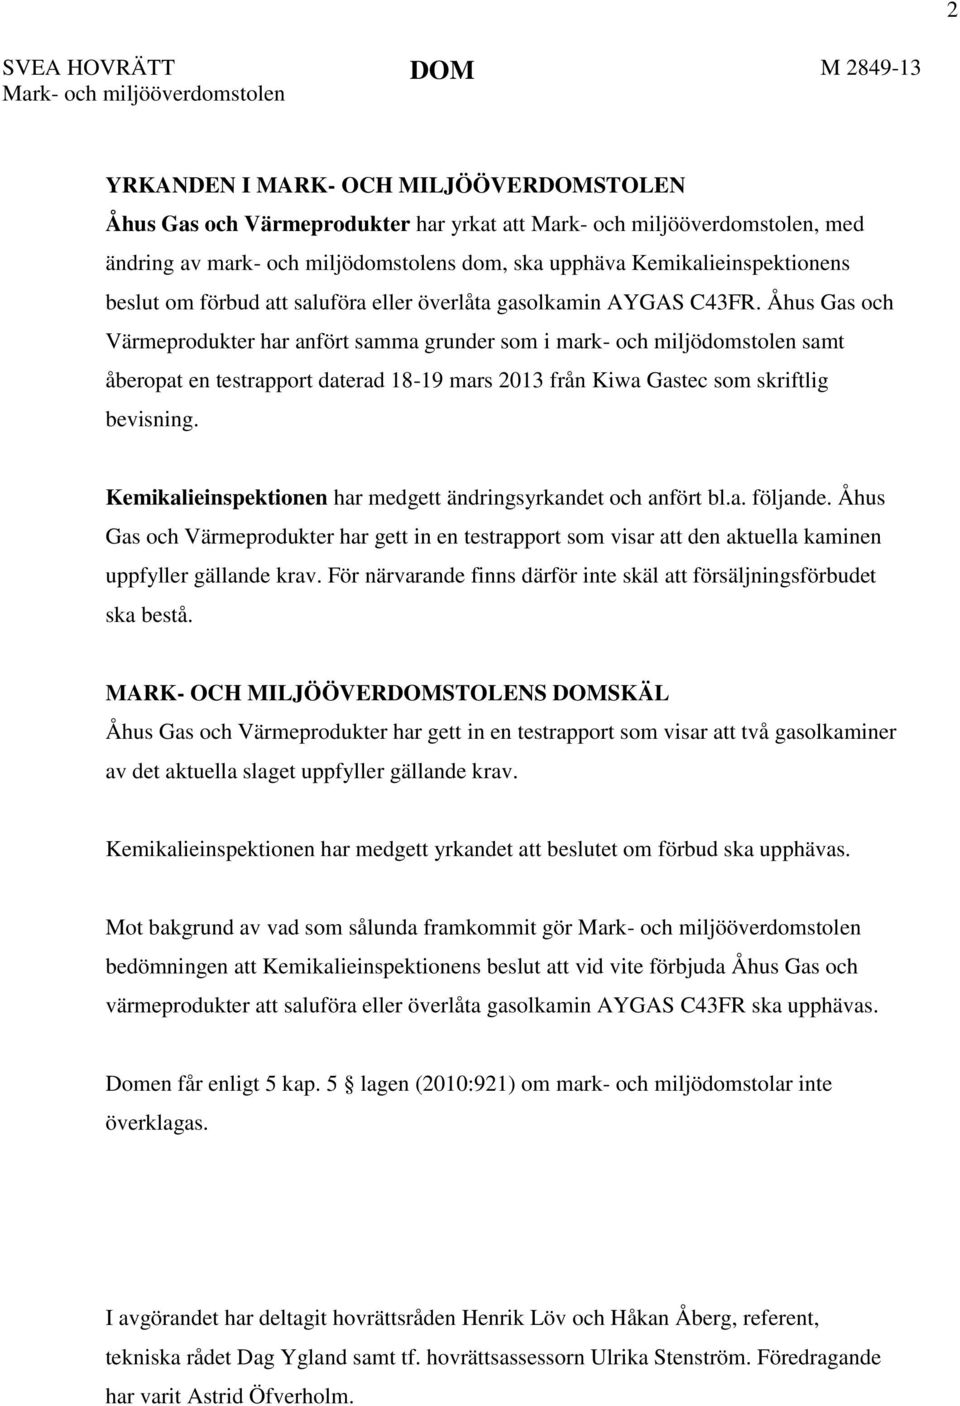 Åhus Gas och Värmeprodukter har anfört samma grunder som i mark- och miljödomstolen samt åberopat en testrapport daterad 18-19 mars 2013 från Kiwa Gastec som skriftlig bevisning.